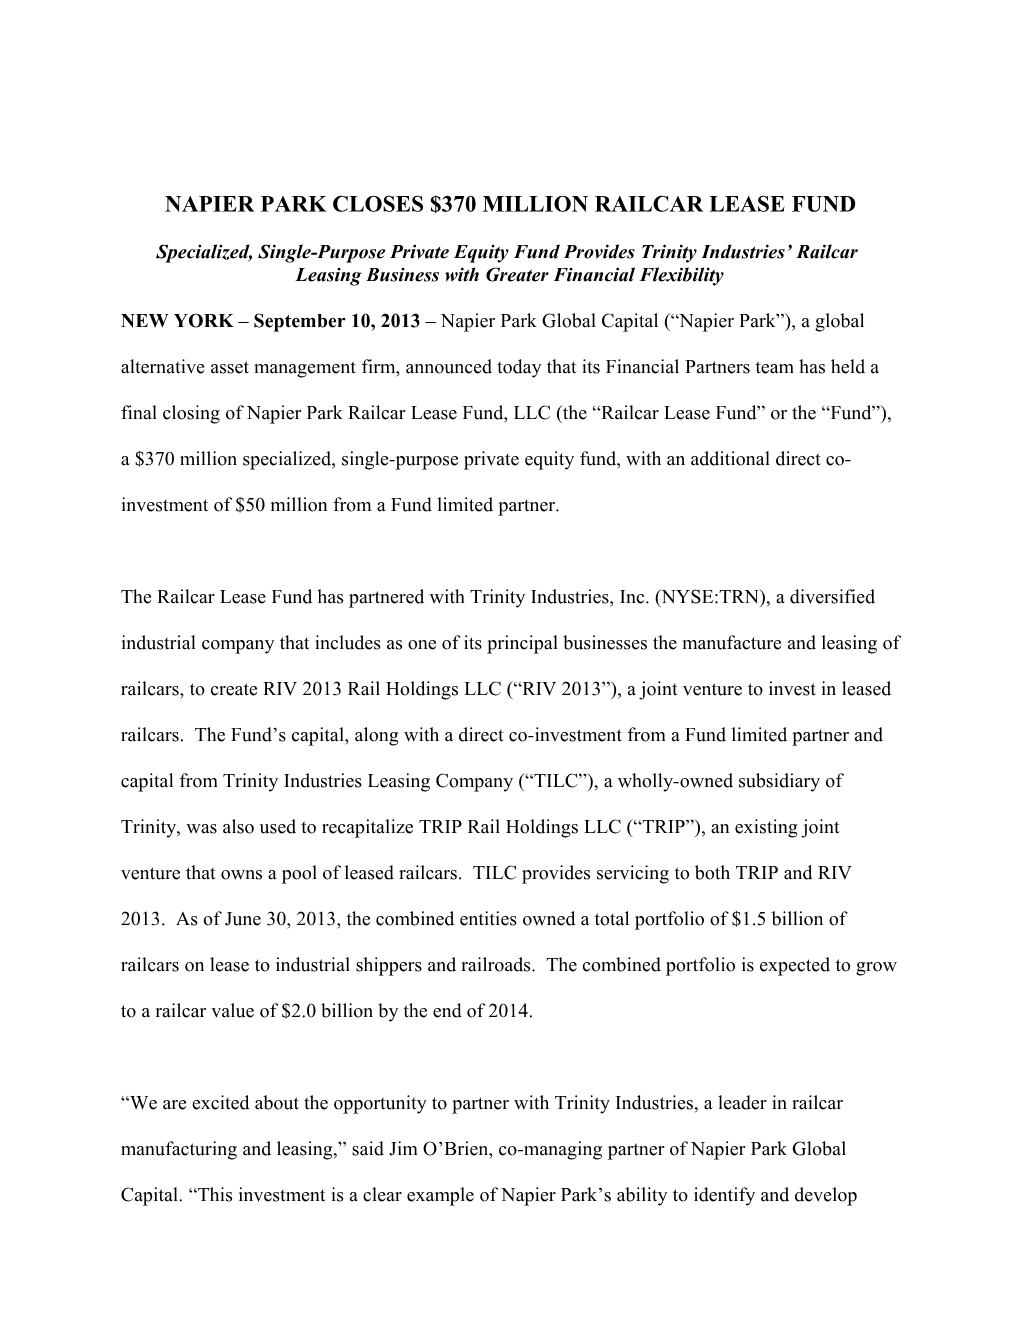 Napier Park Closes $370 Million Railcar Lease Fund